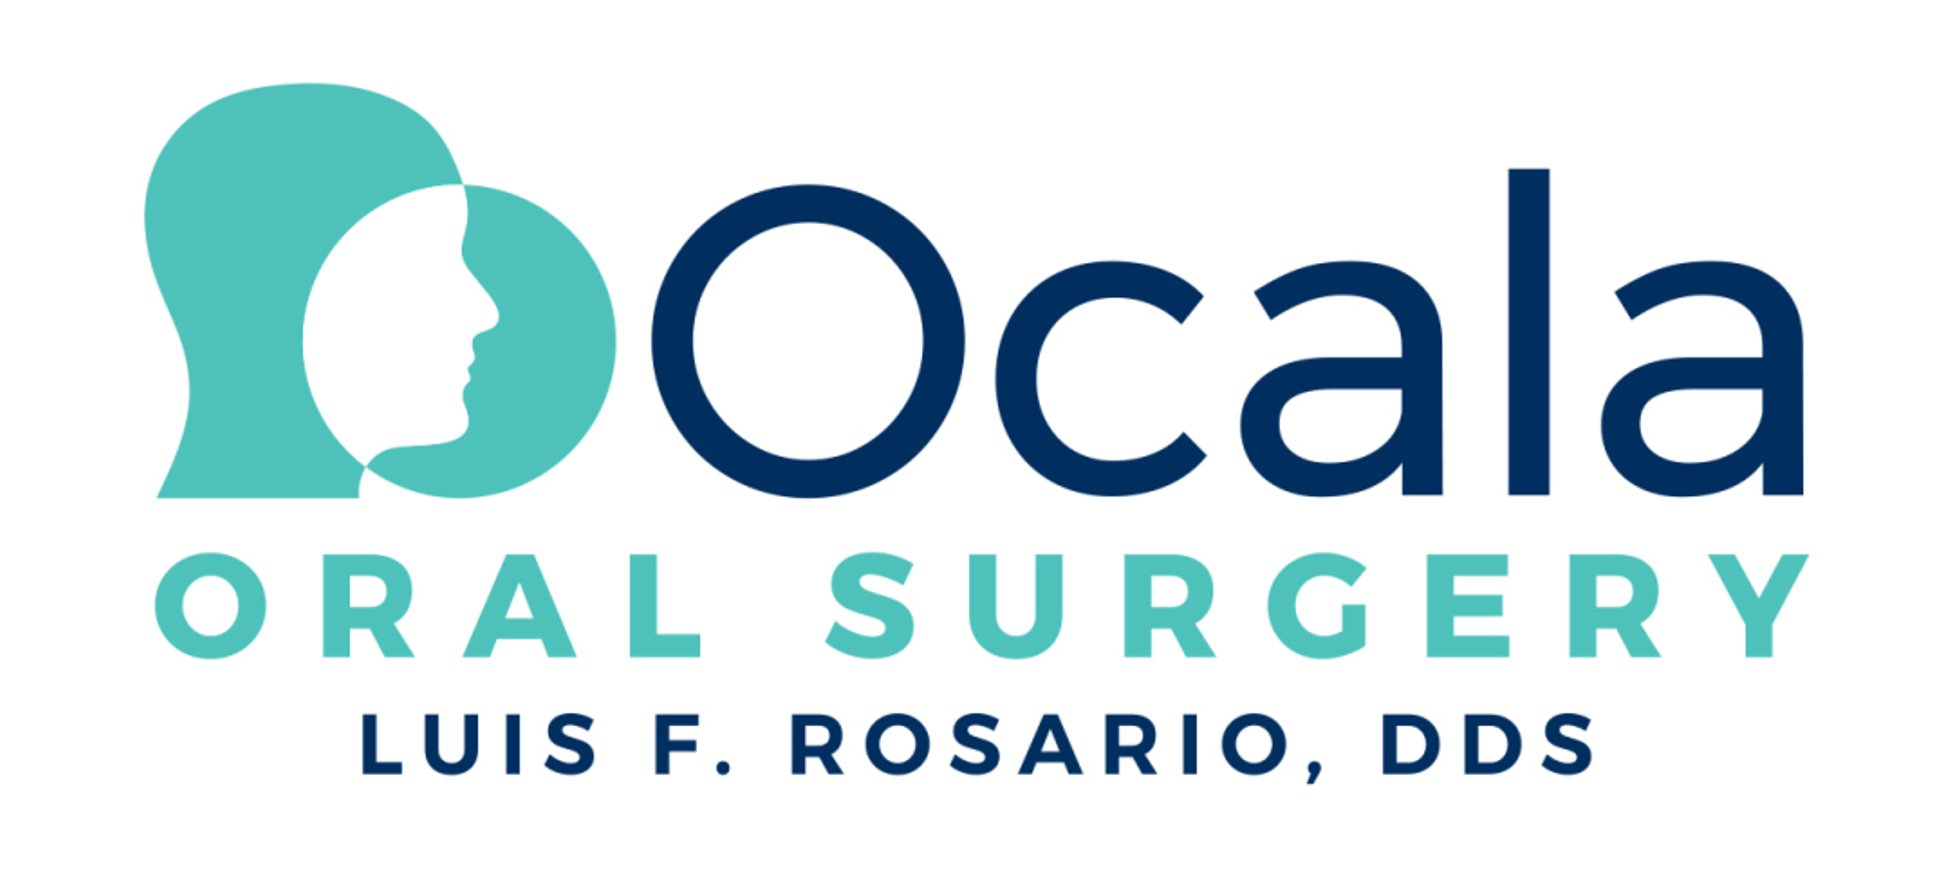 Ocala Oral Surgery